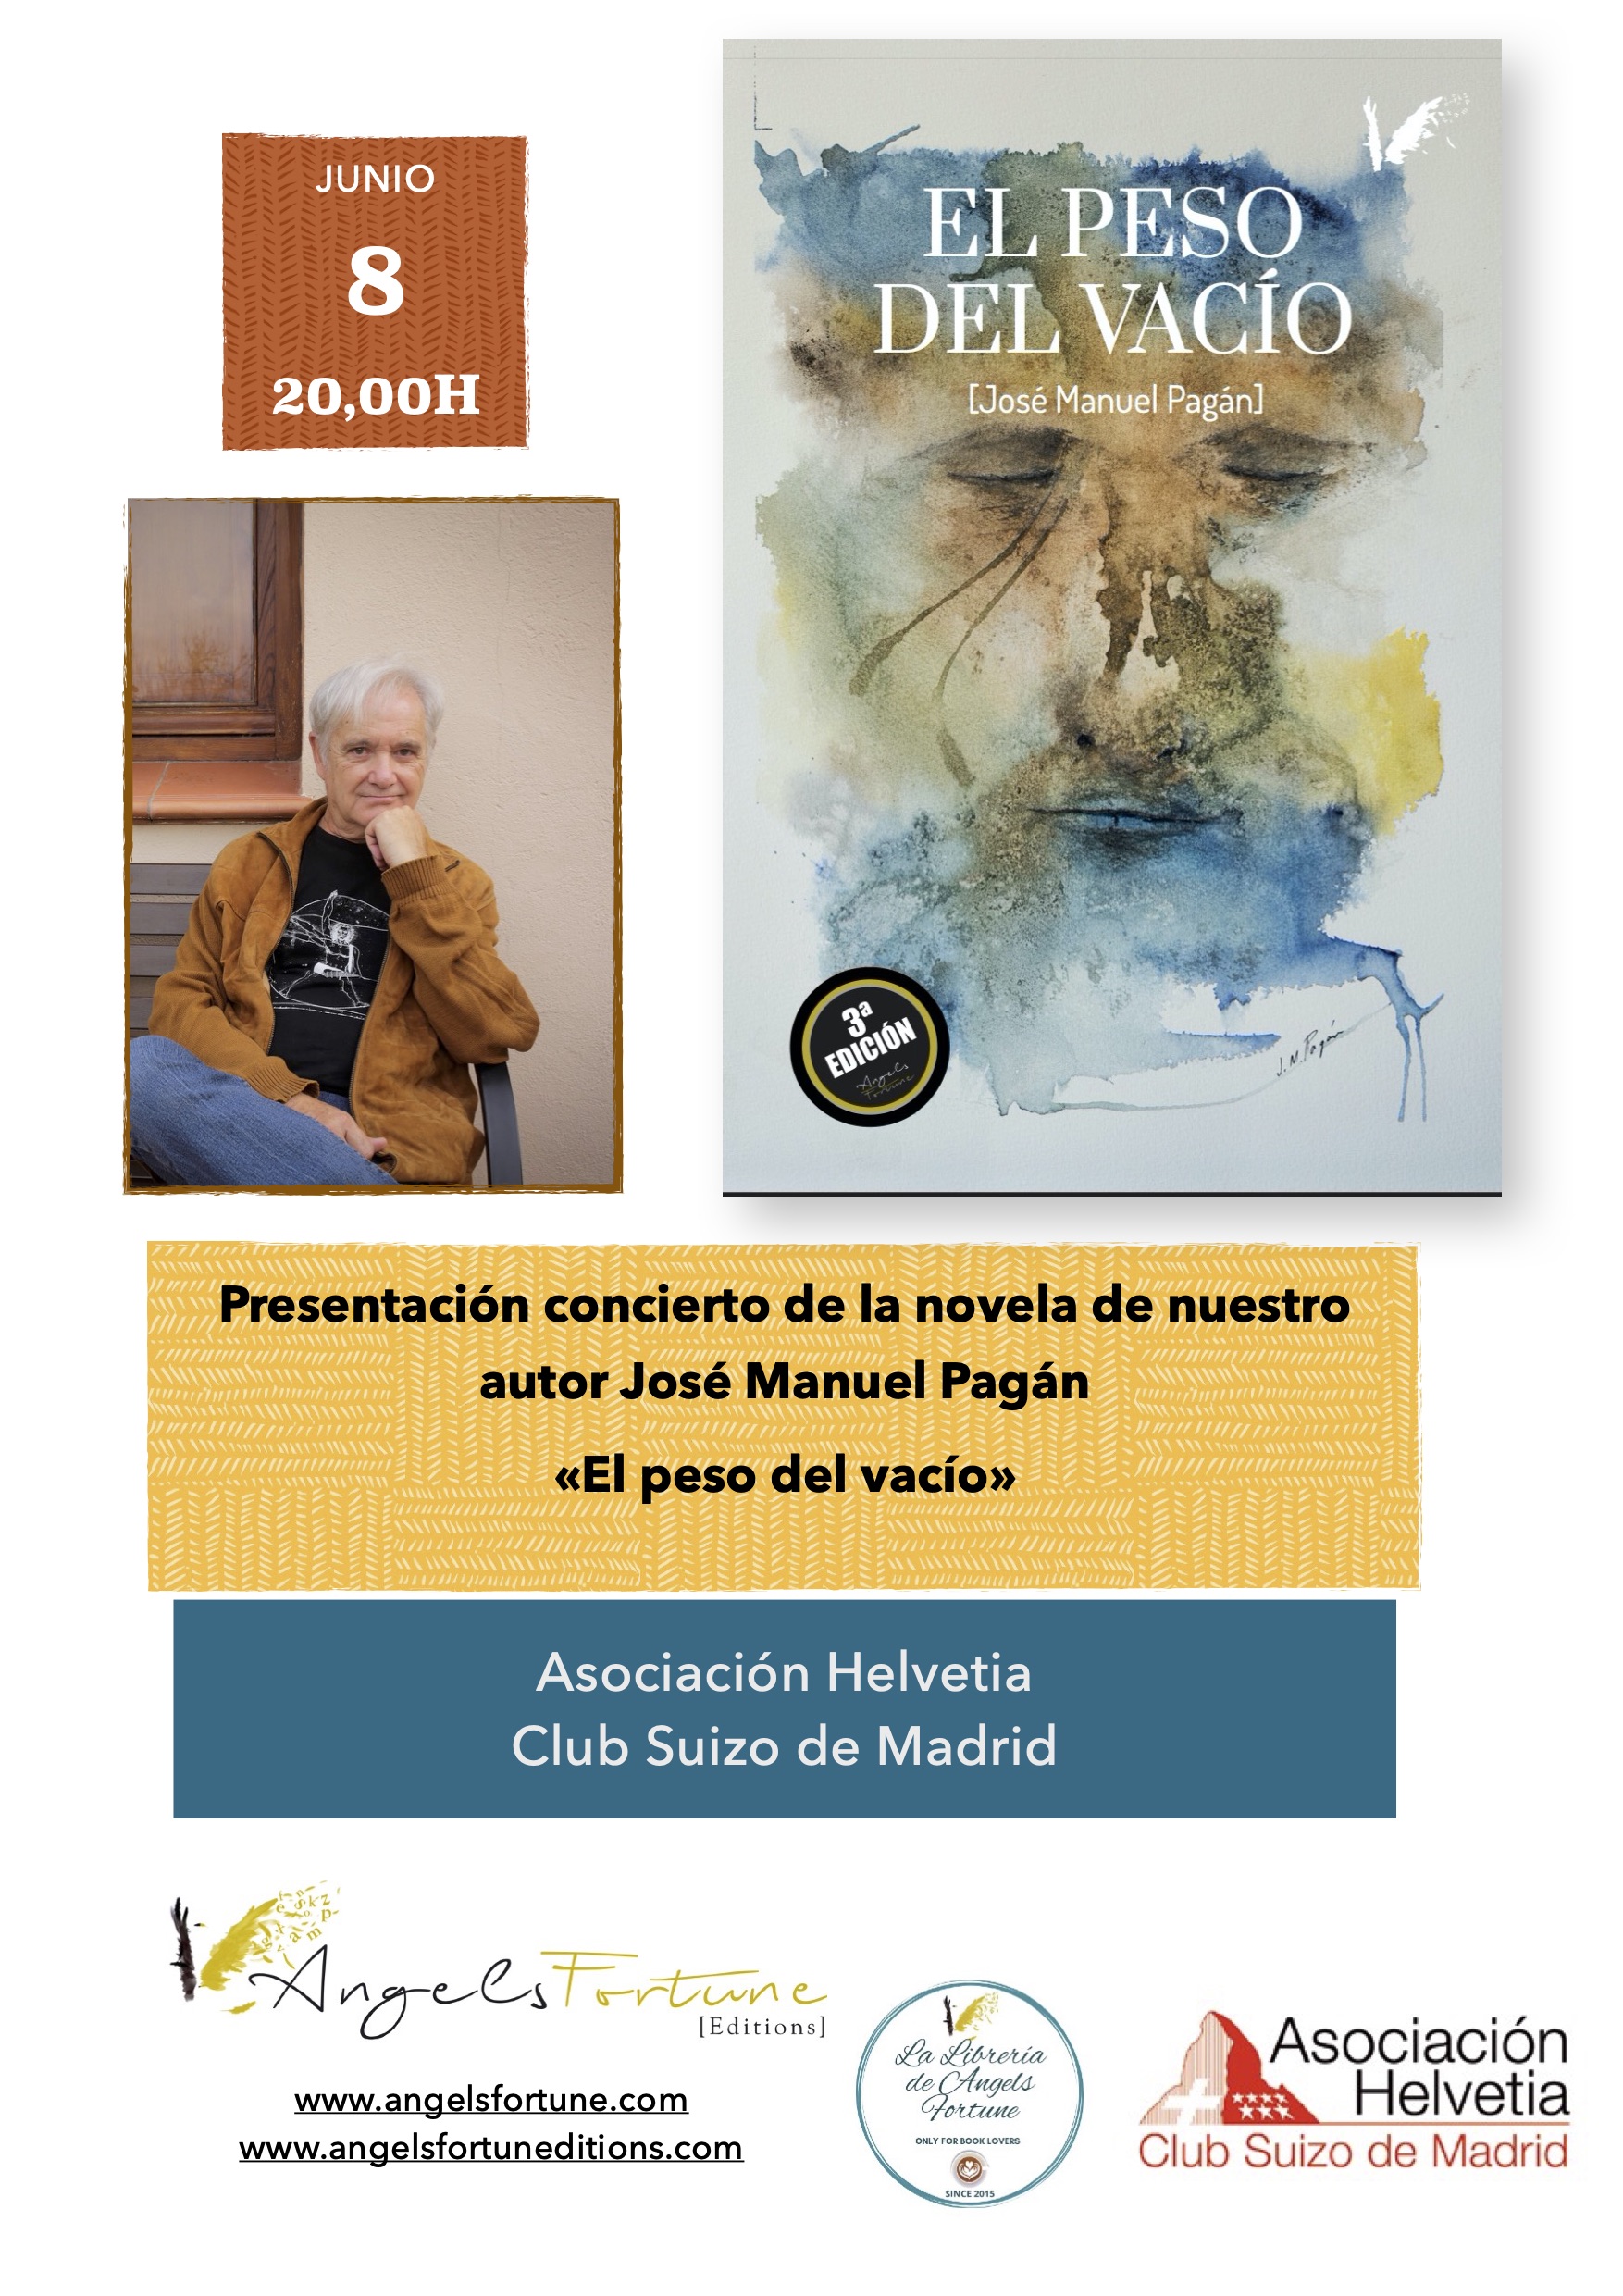 Presentación y concierto <br> José Manuel Pagán <br> El peso del vacío